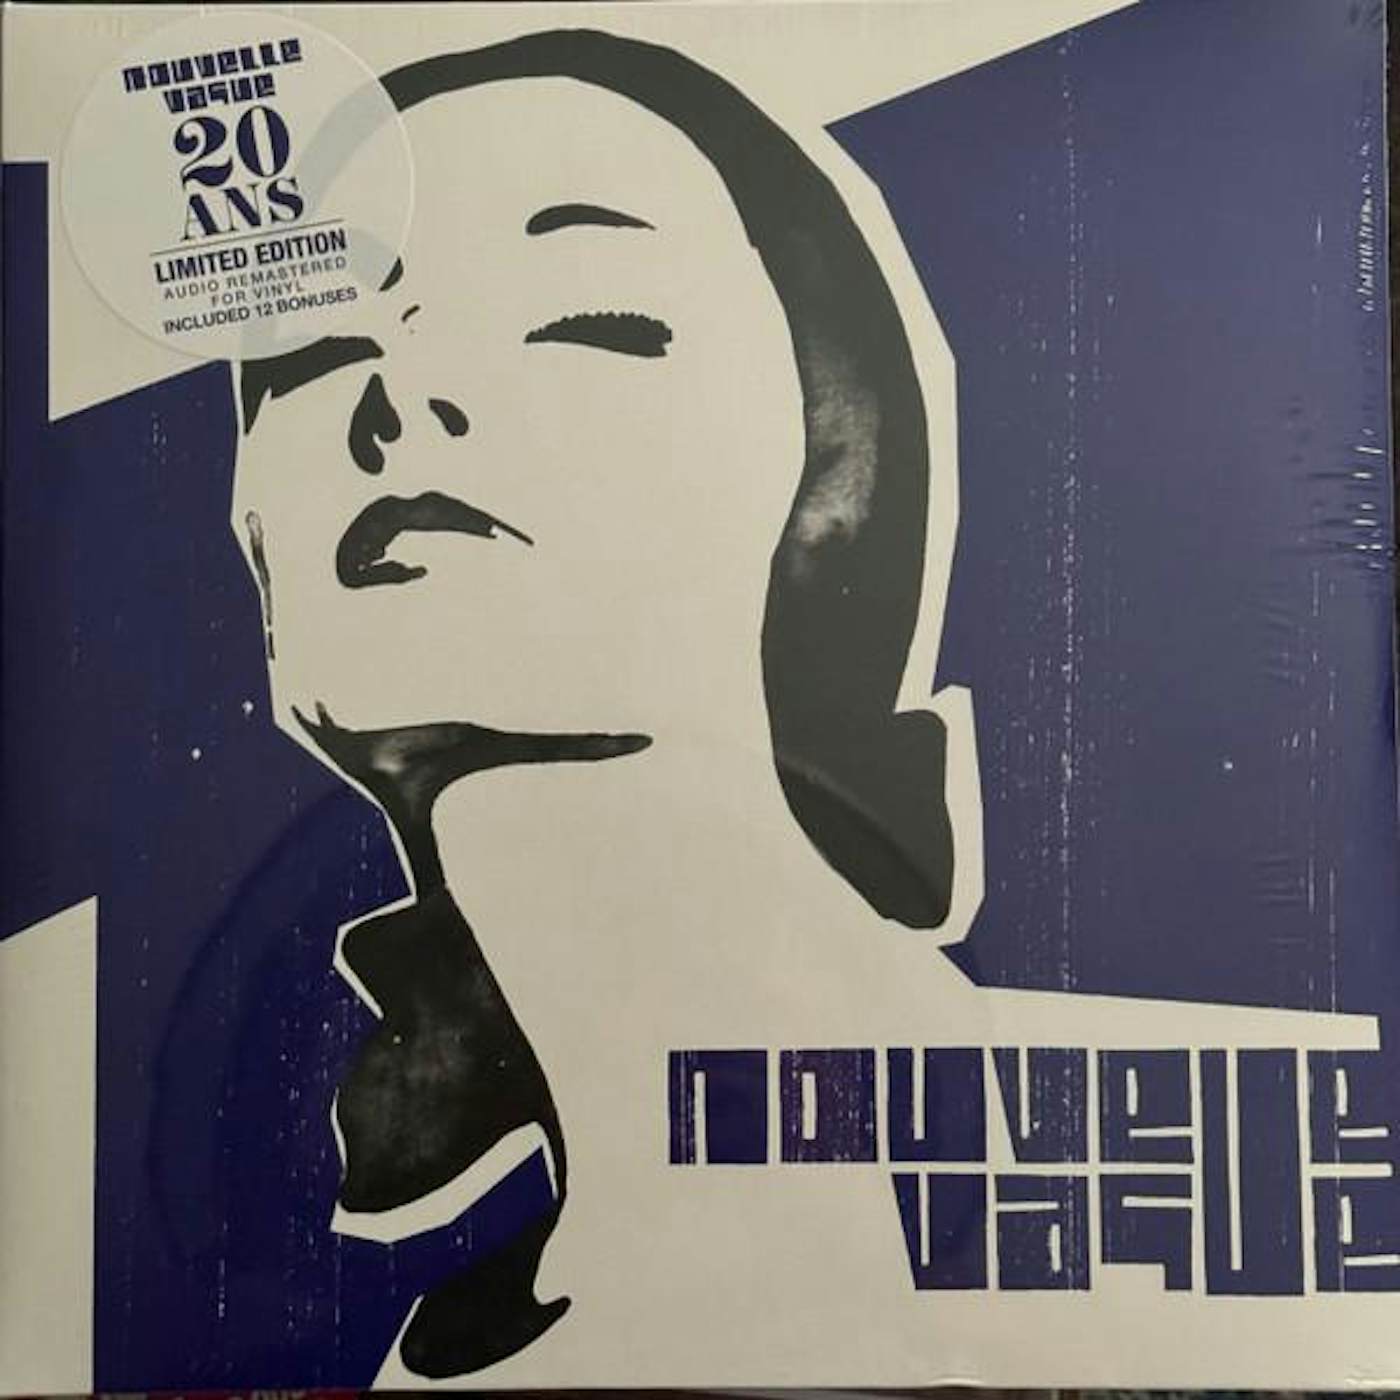 NOUVELLE VAGUE (2LP) Vinyl Record